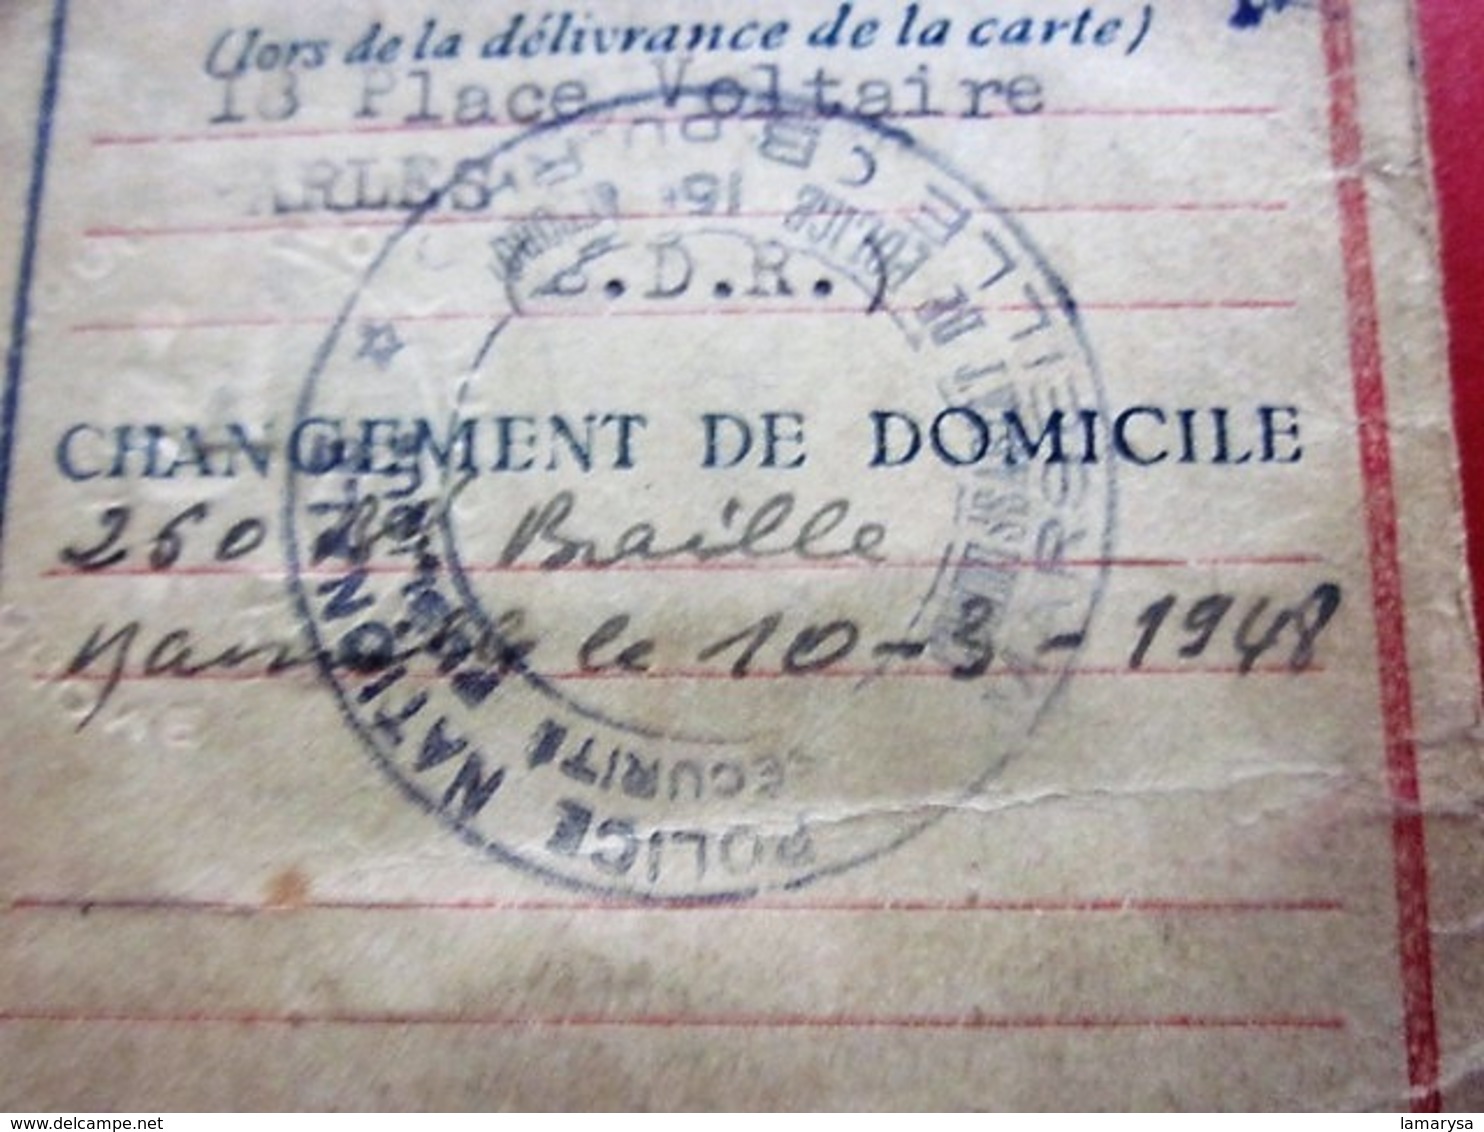 1944 WW2- CARTE IDENTITÉ DE FRANÇAIS SOUS RÉGIME De VICHY PÉTAIN ÉTAT FRANÇAIS Délivrée Arles(rayé Barre Noire)☛(Périmé) - Documents Historiques